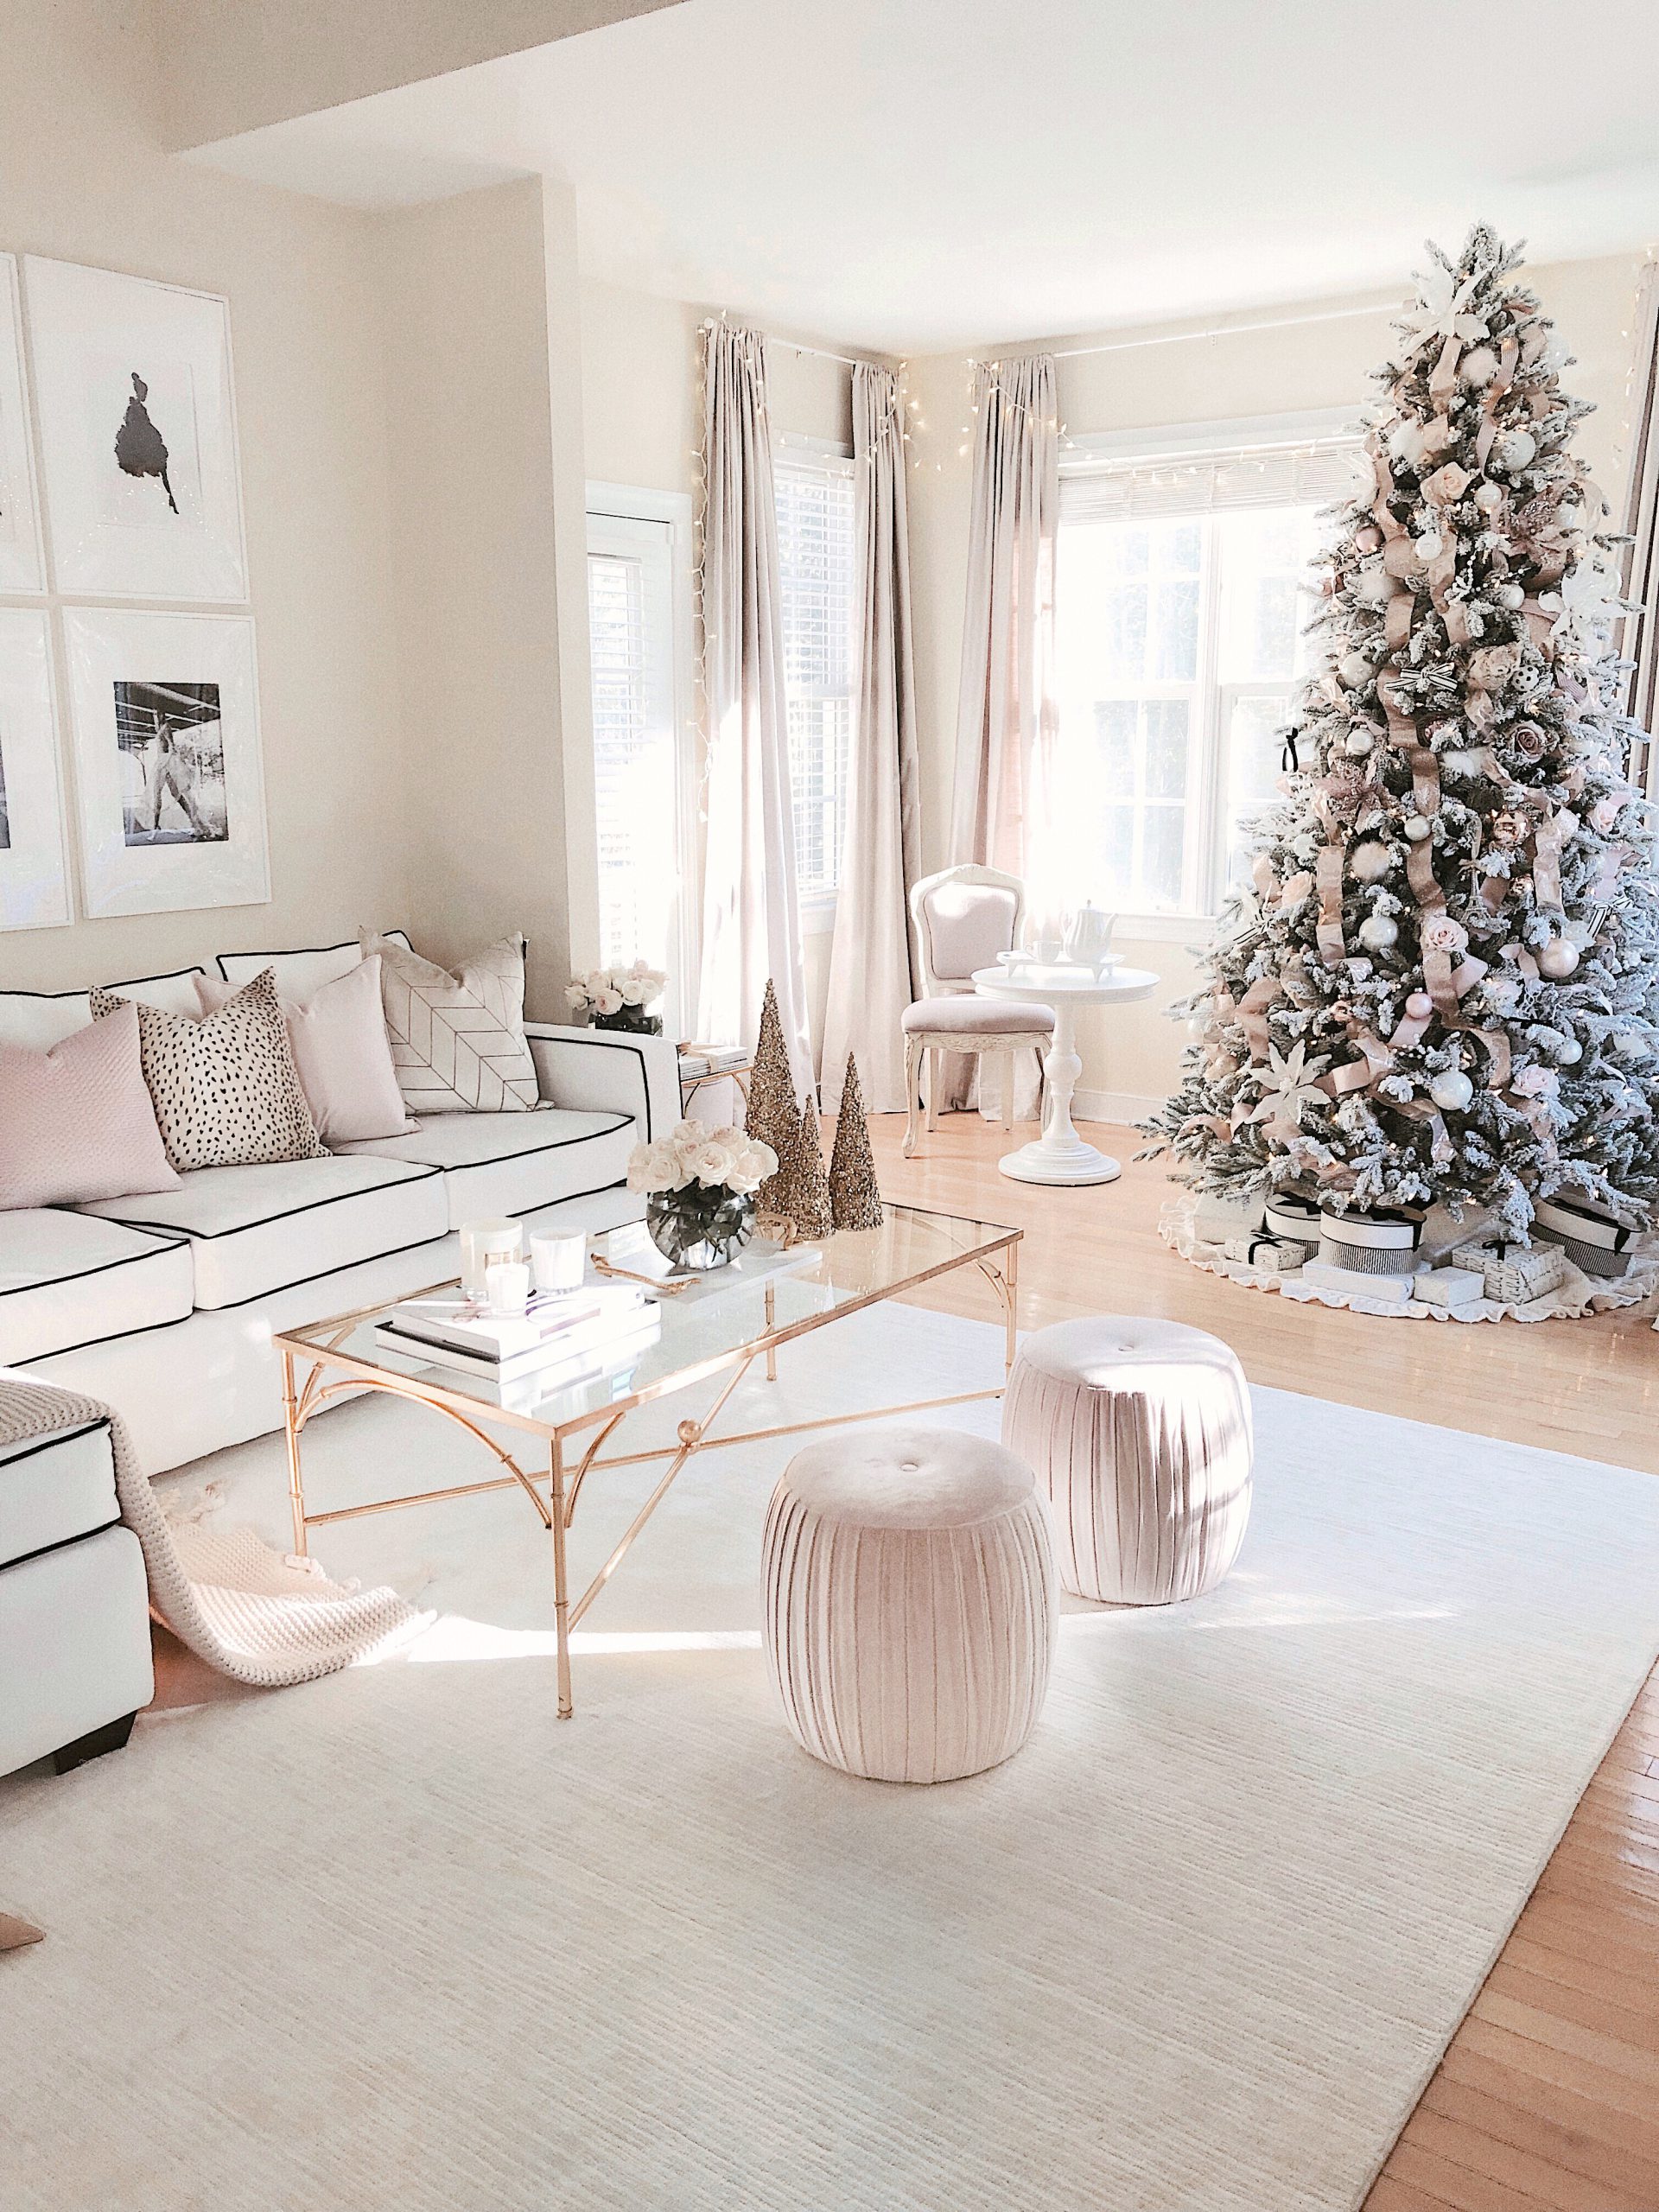 Chanel & Glam Inspired living room makeover